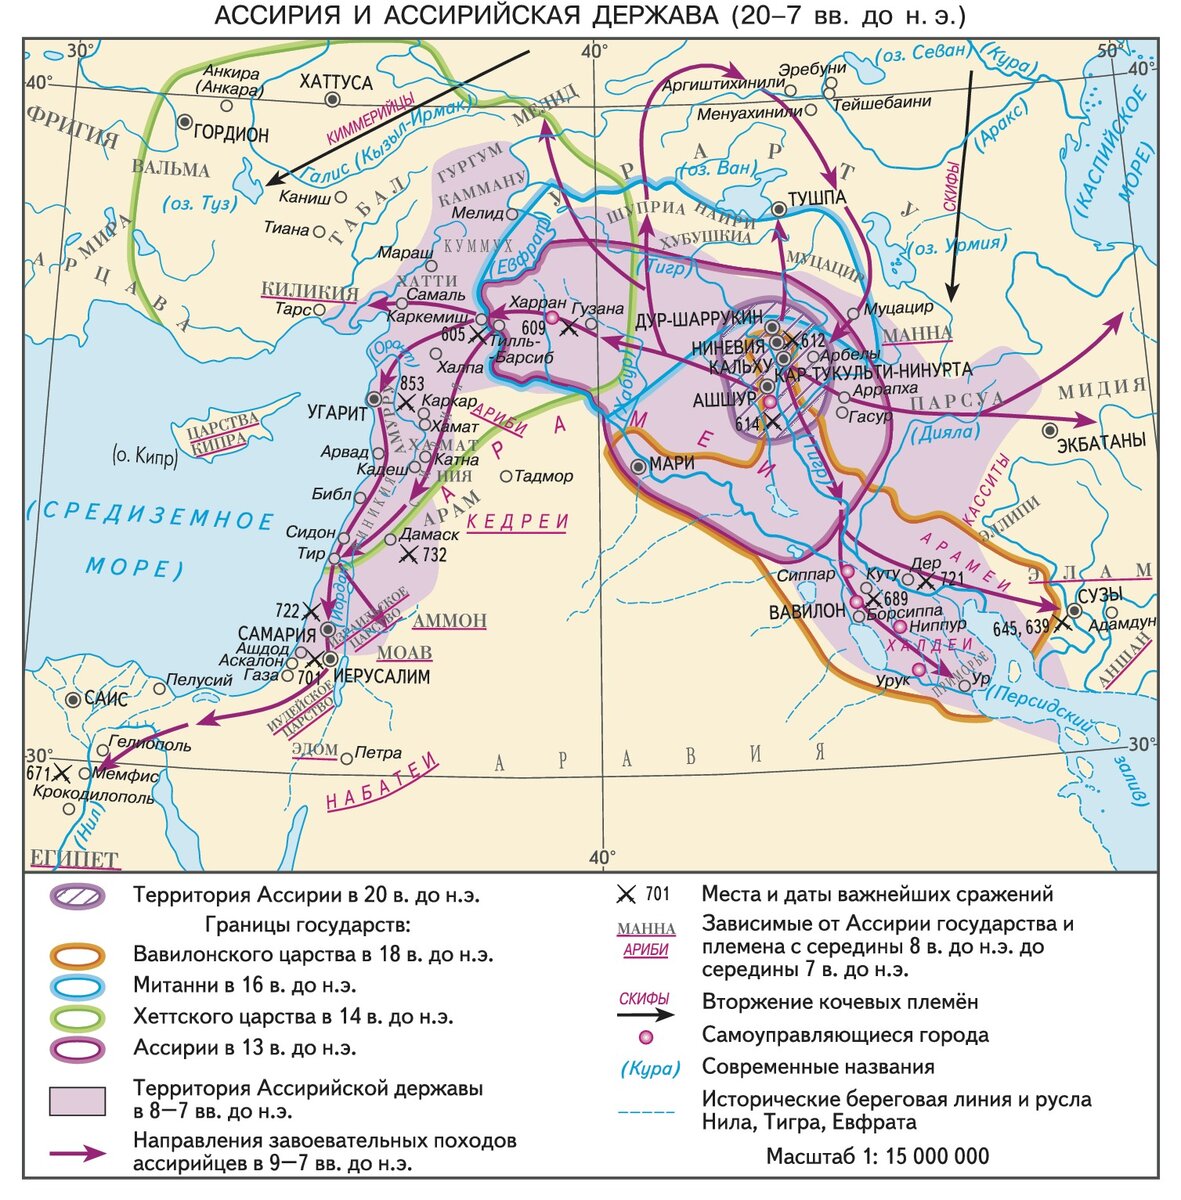 Ассирийское царство в 20 в до н э на карте